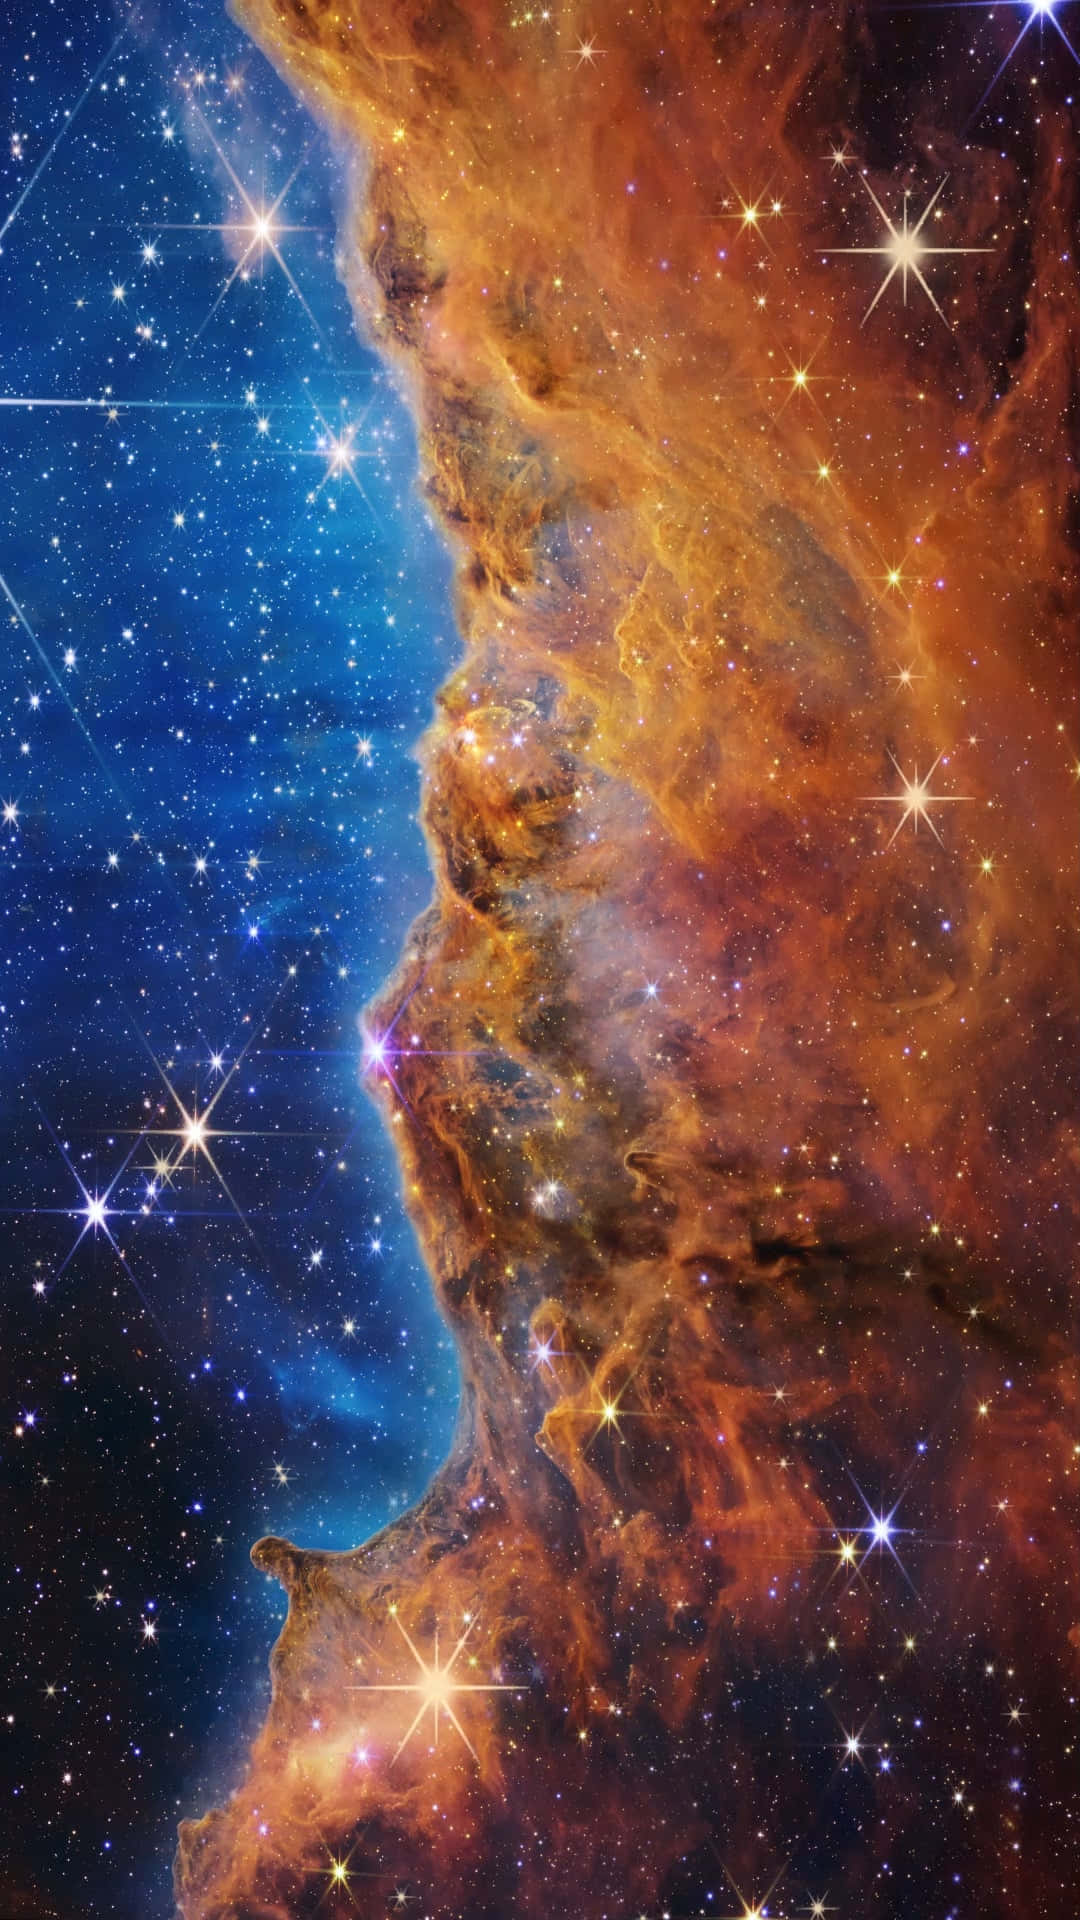 “Stargazing into the spectacular Nebula”